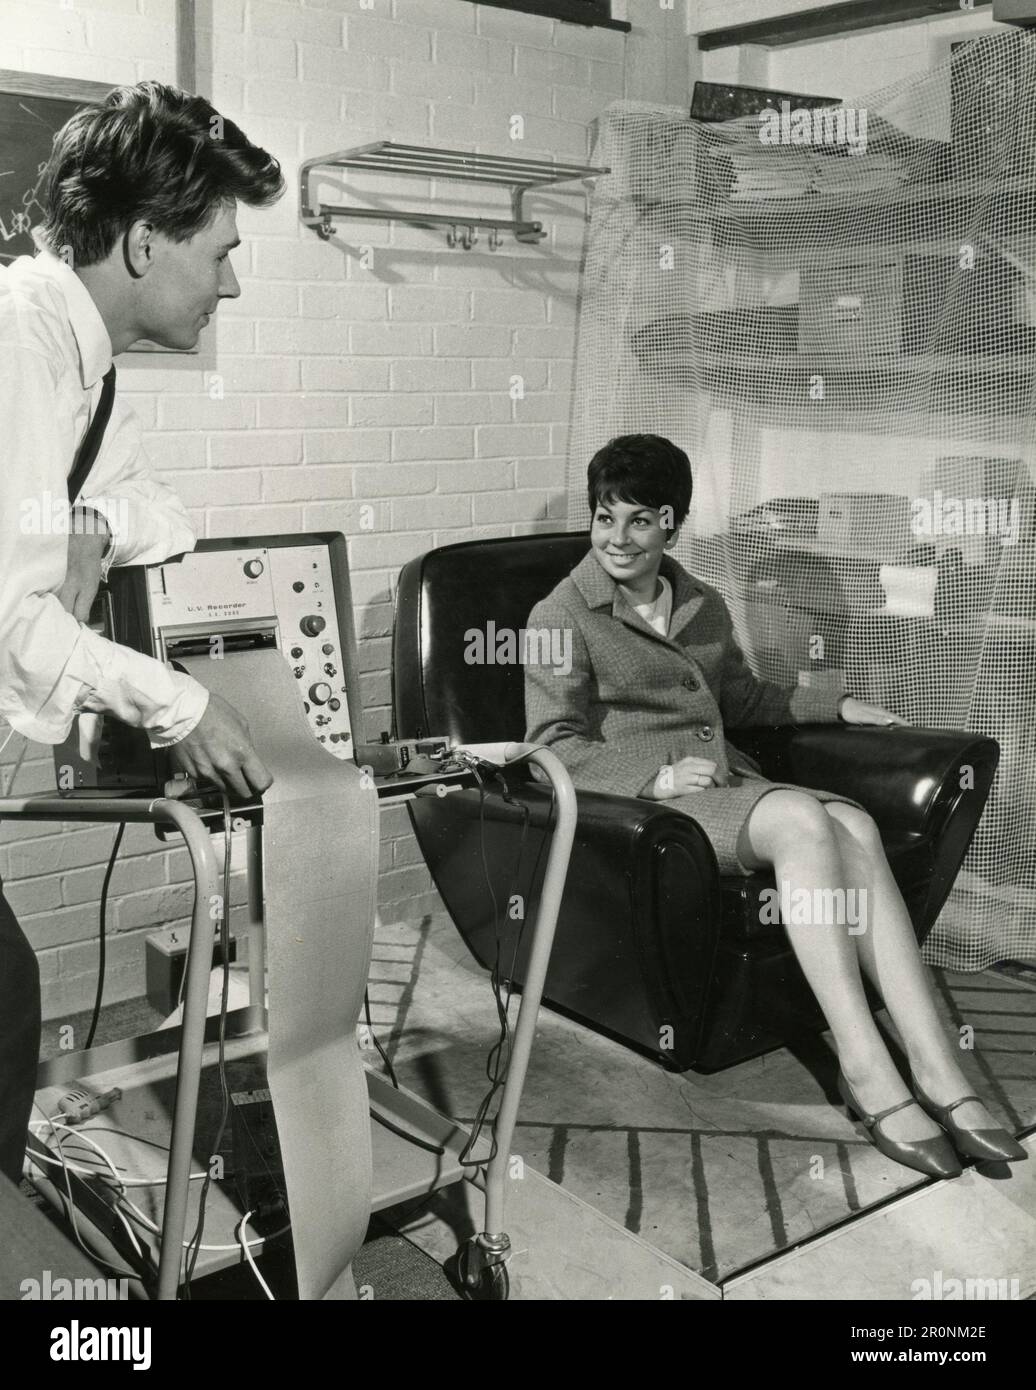 Testare l'instabilità di una seduta in varie posizioni per la Furniture Industry Research Association, UK 1966 Foto Stock